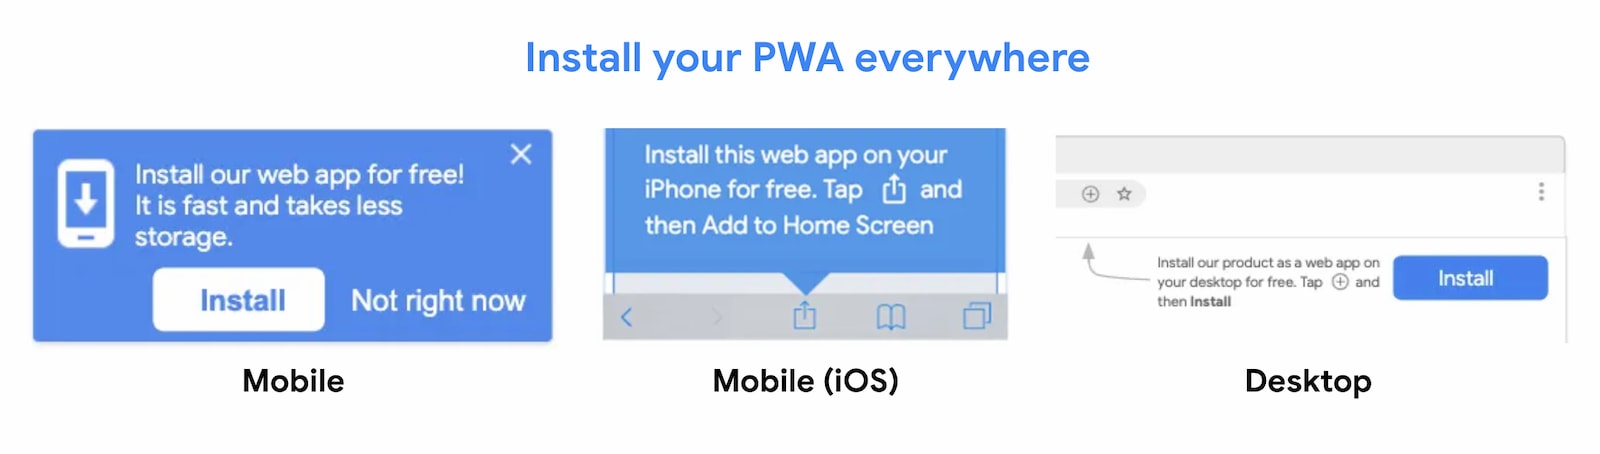 PWA можно установить везде.